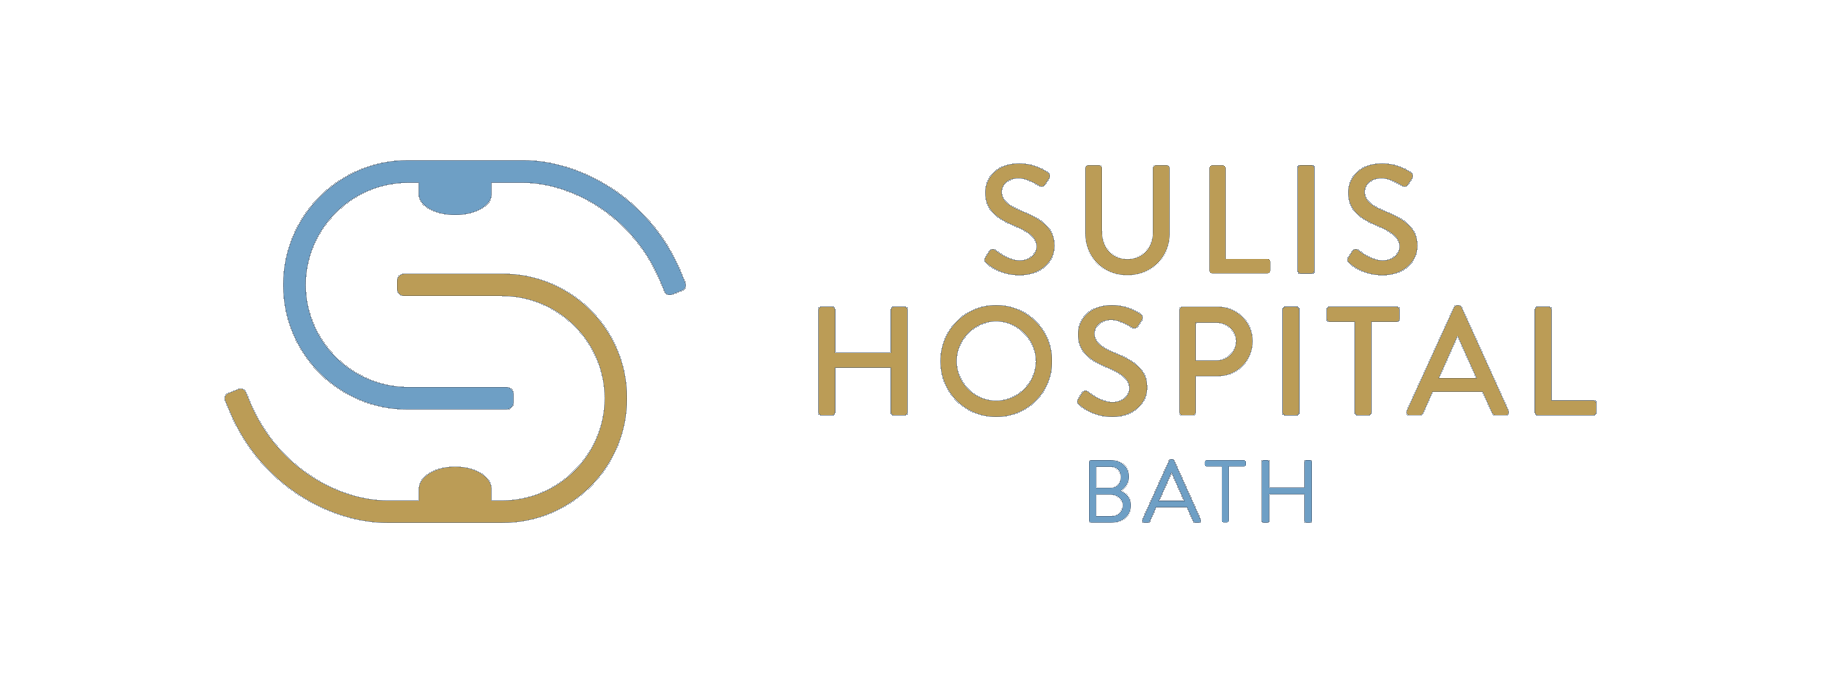 Bath – Sulis Hospital logo